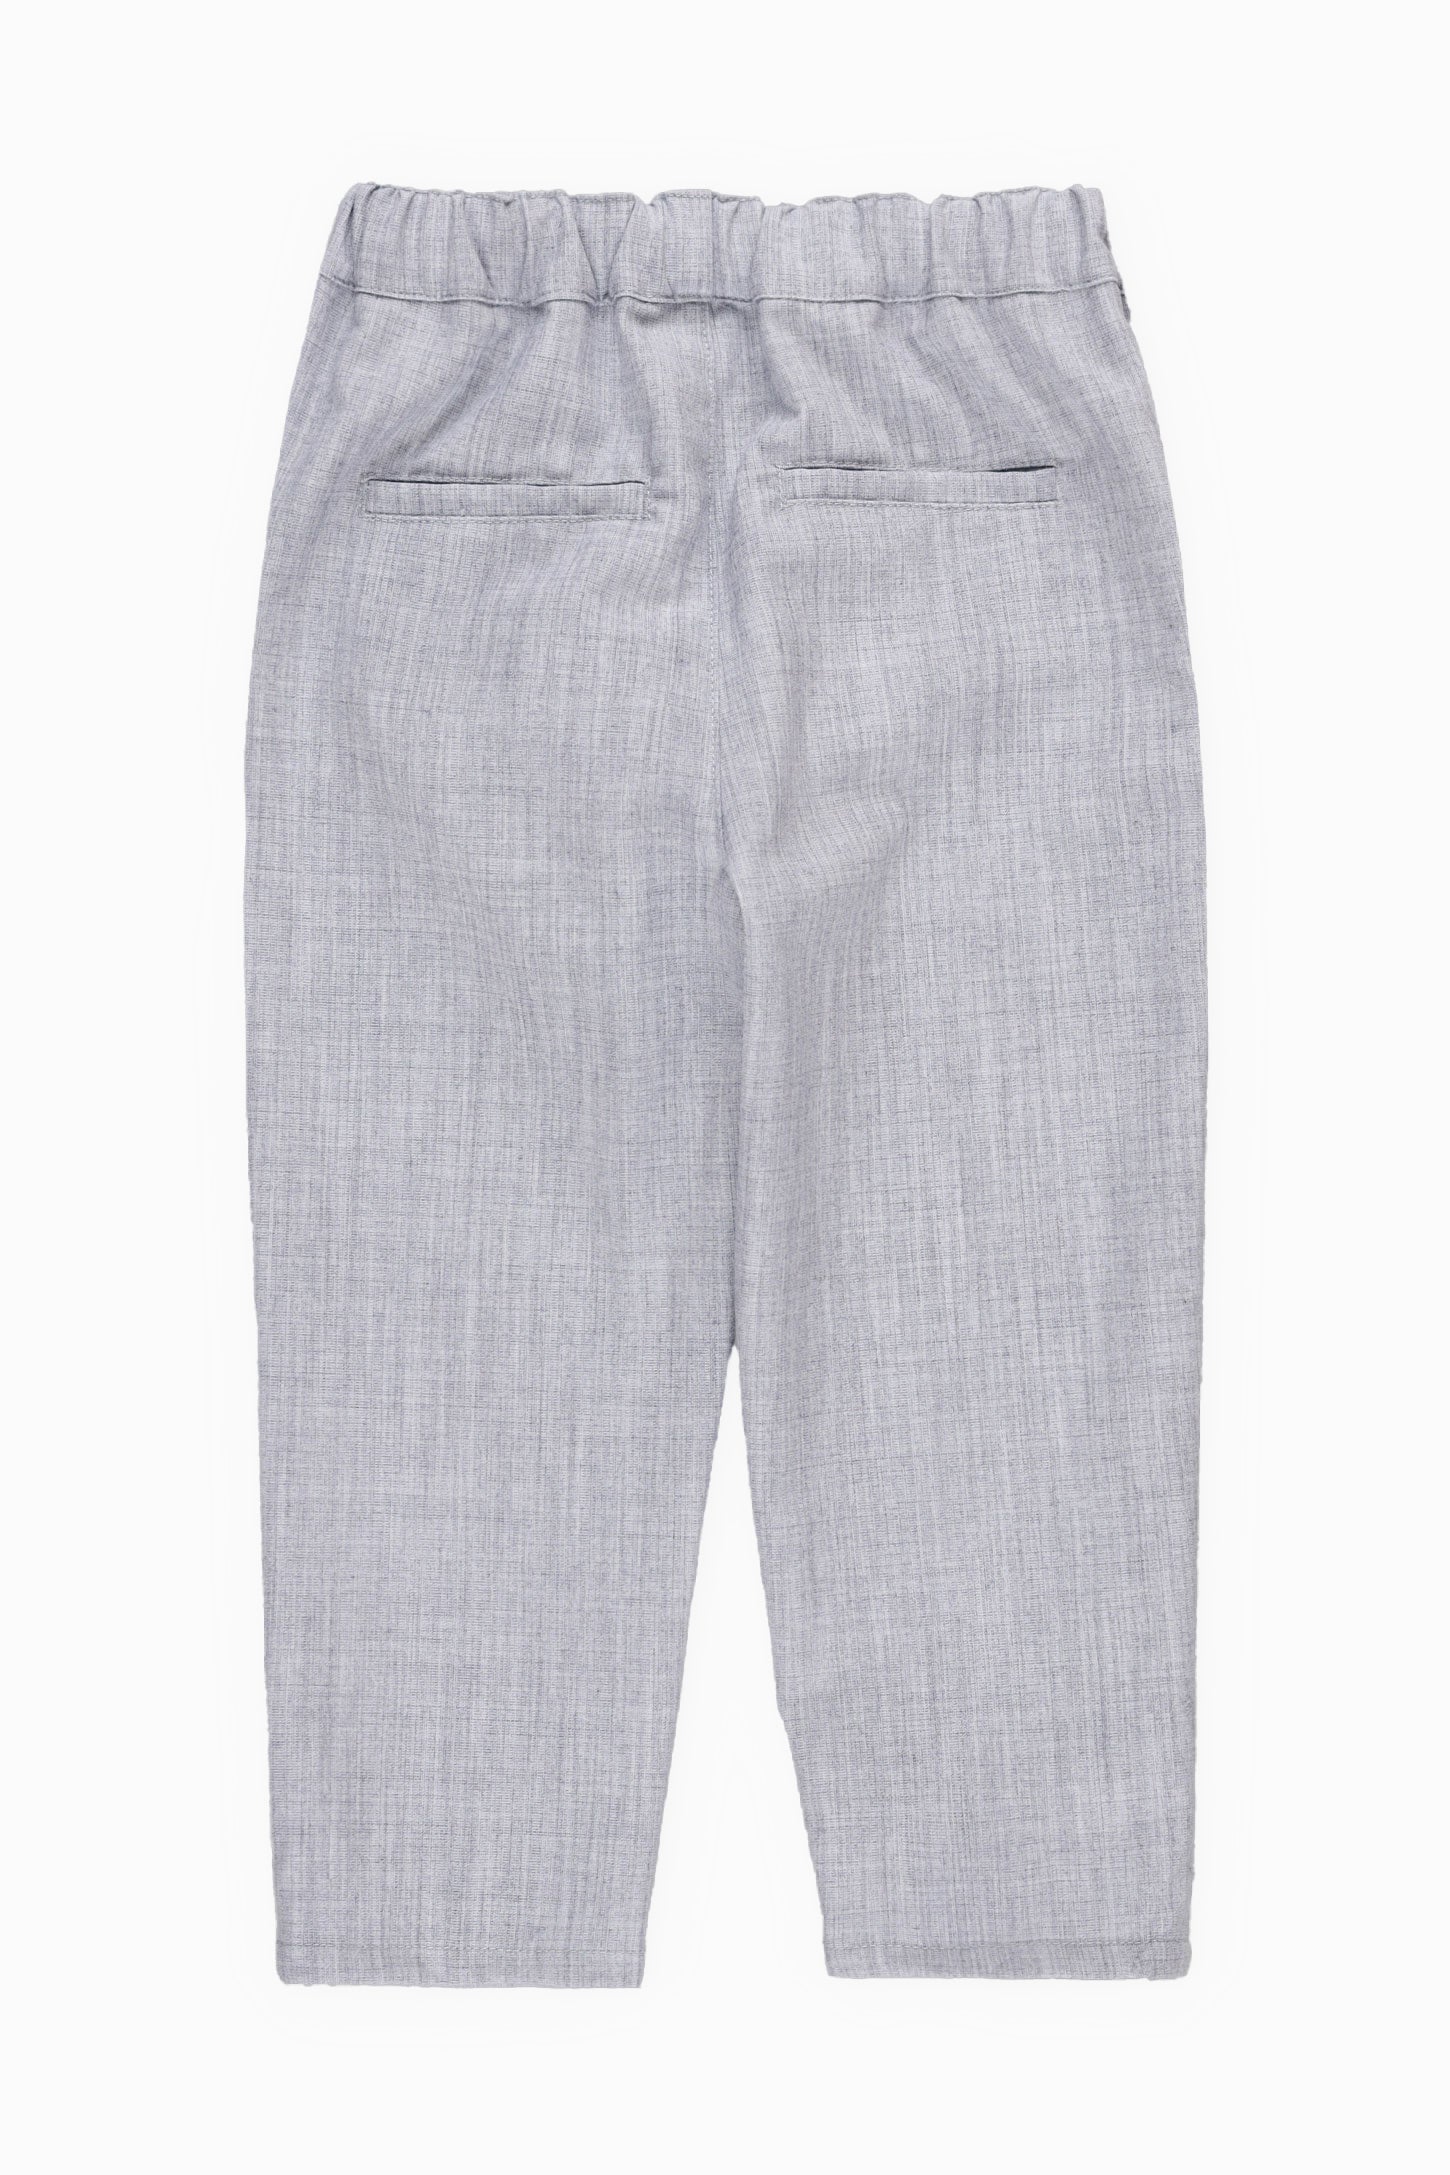 Pantalon taille élastique, 2T-3T - Bébé garçon && GRIS